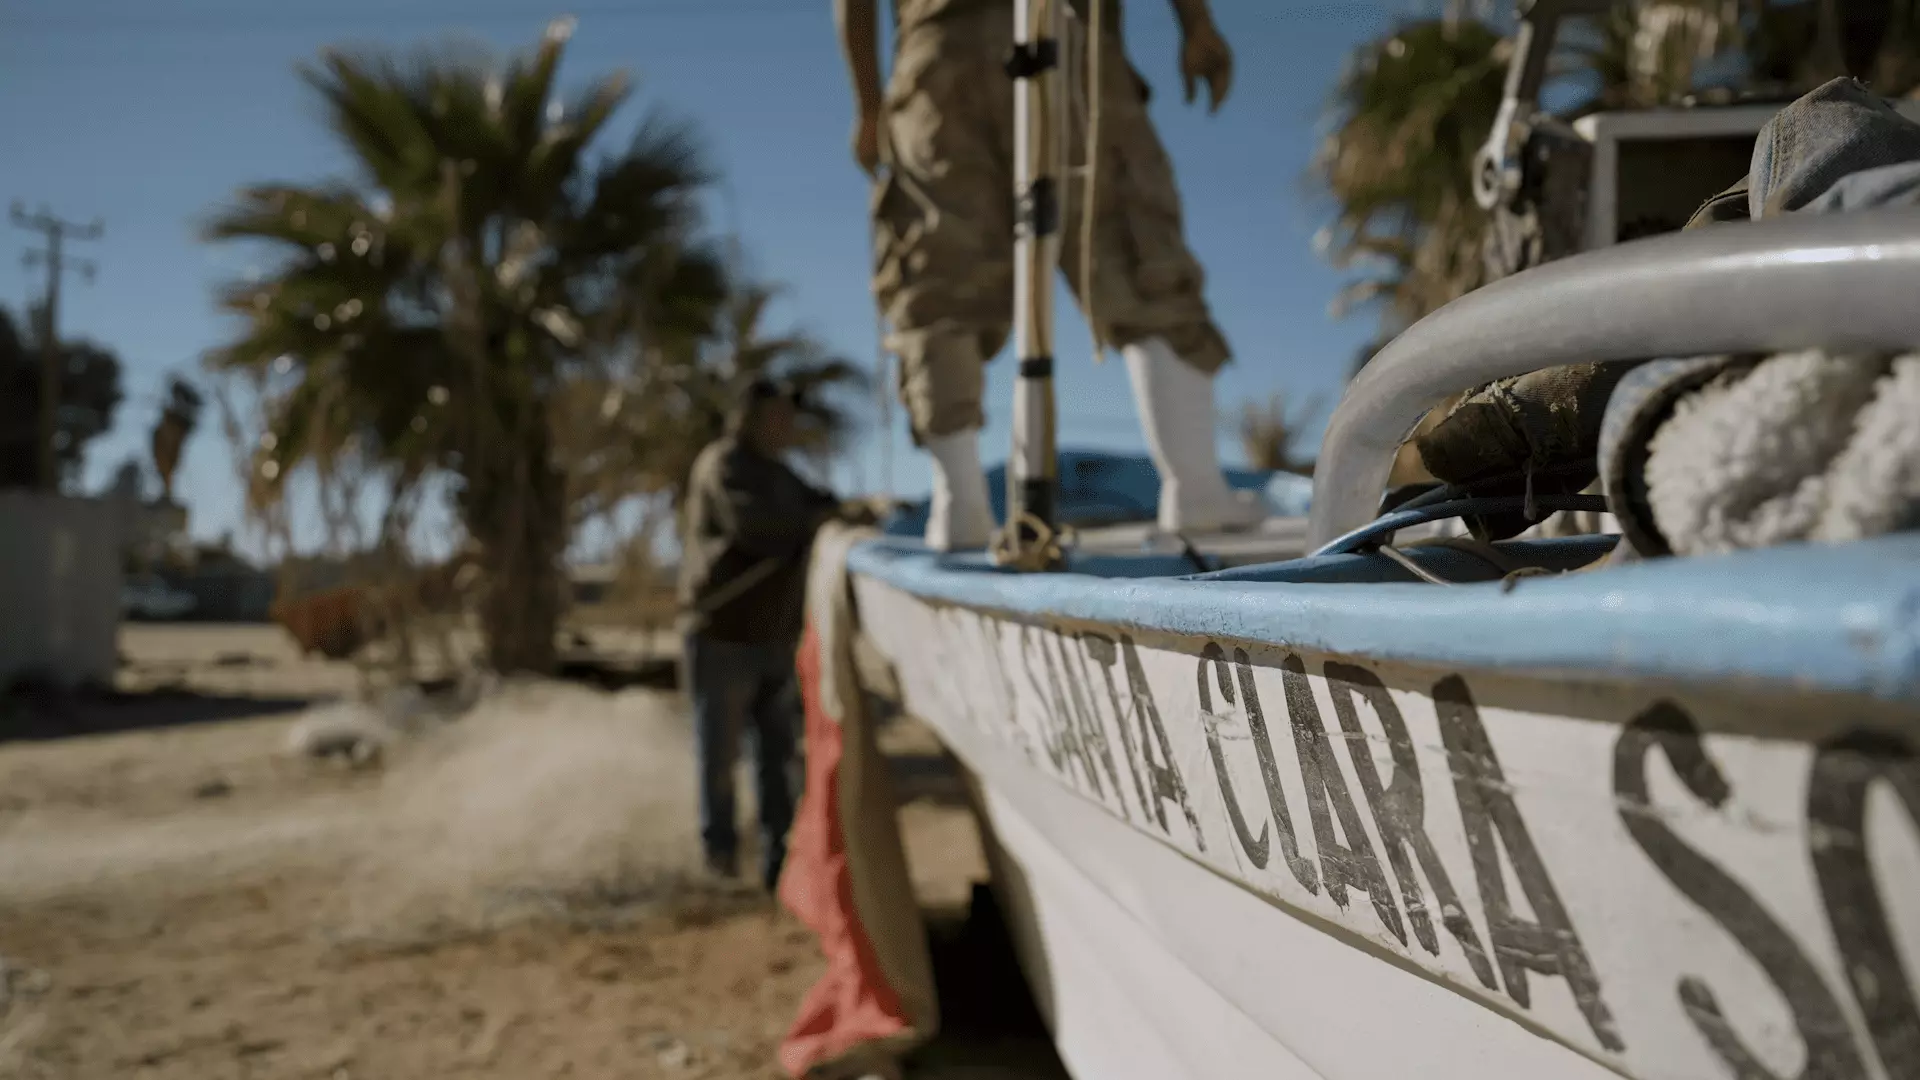 Pescadores legales del Golfo de Santa Clara, Sonora, preparan su embarcación para salir a pescar.